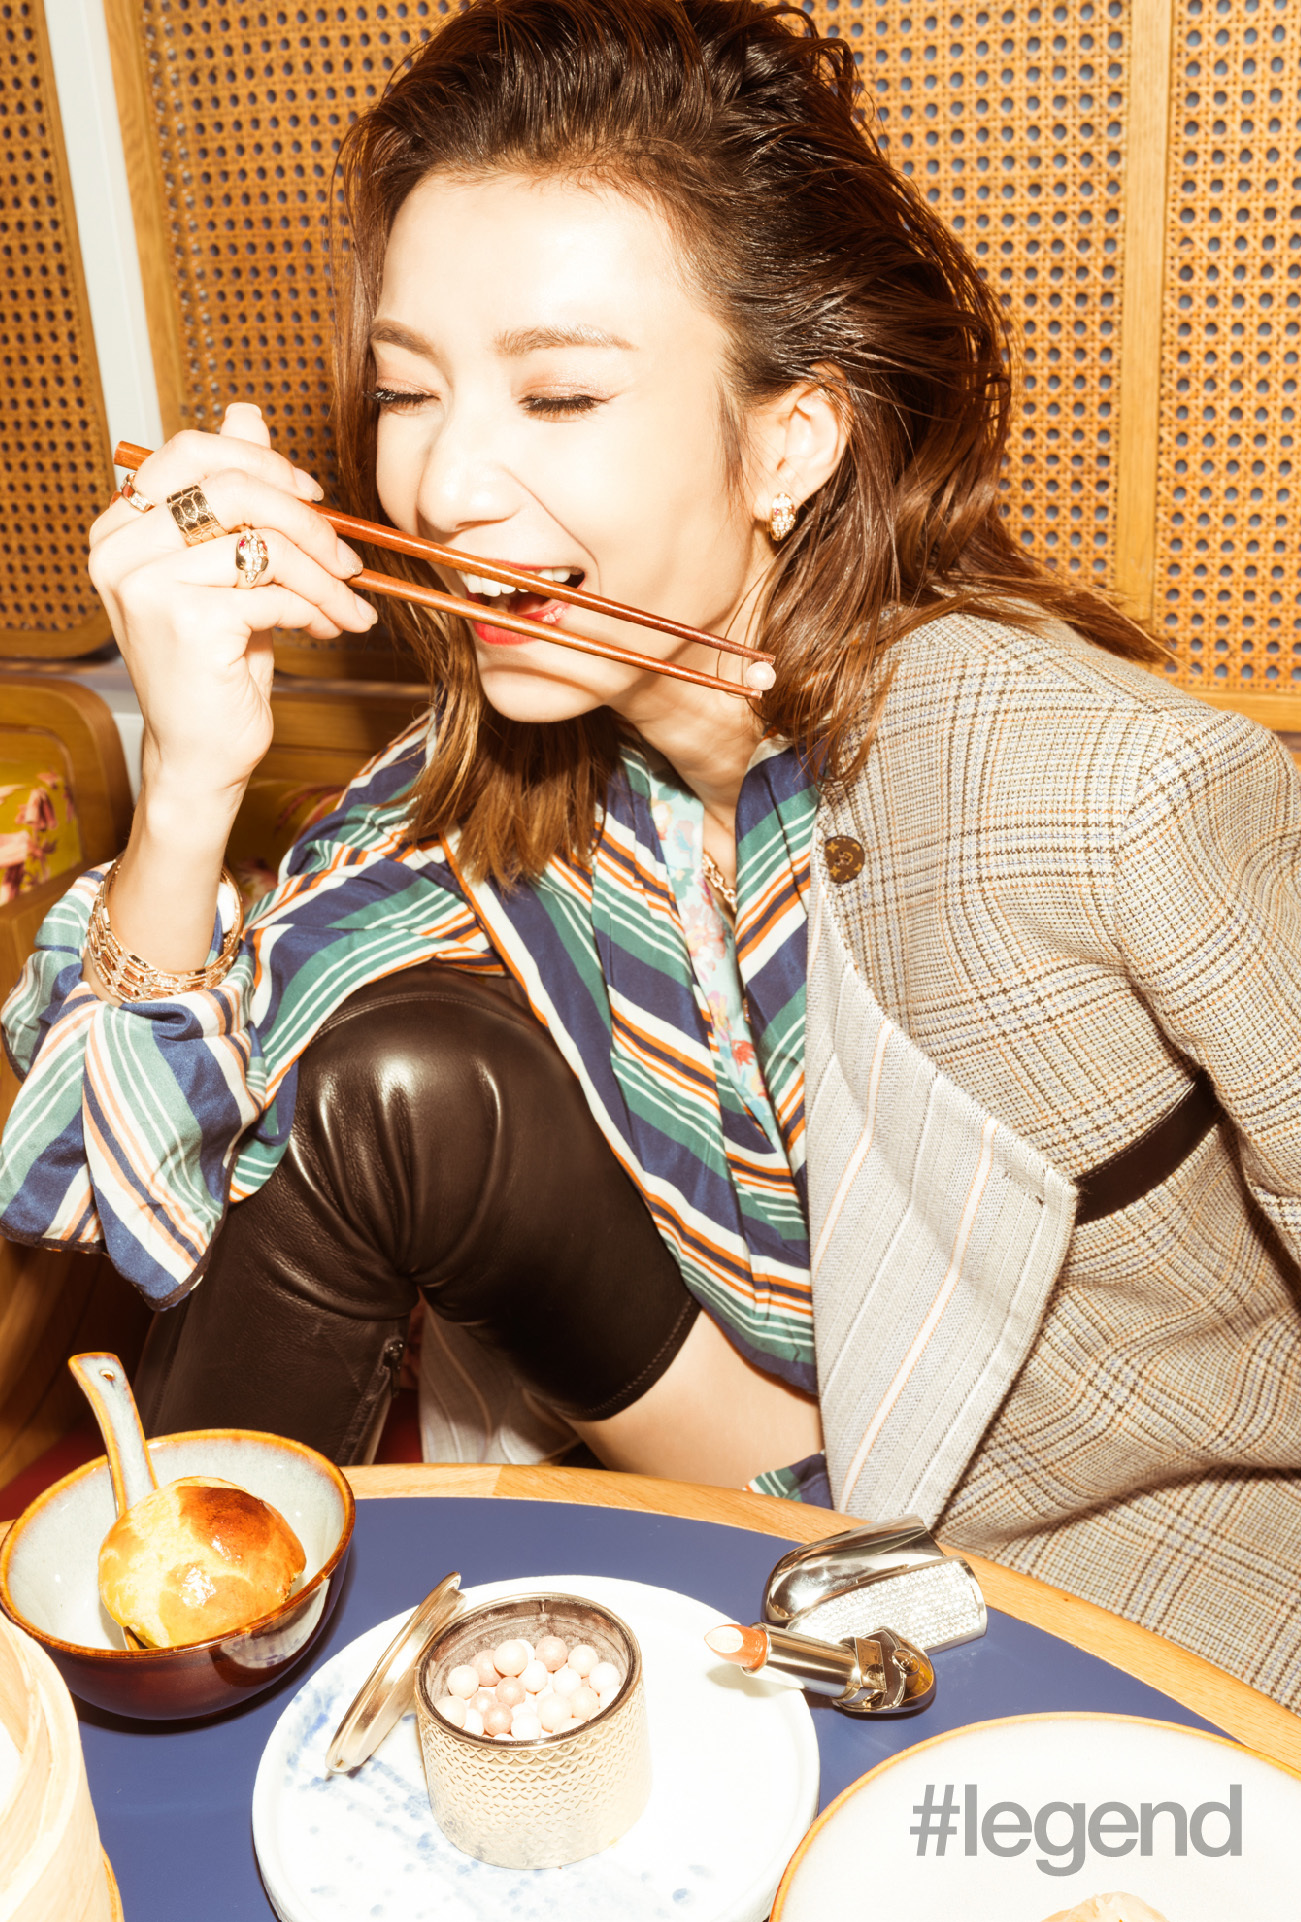 Grace Wong eating dumplings with chopsticks